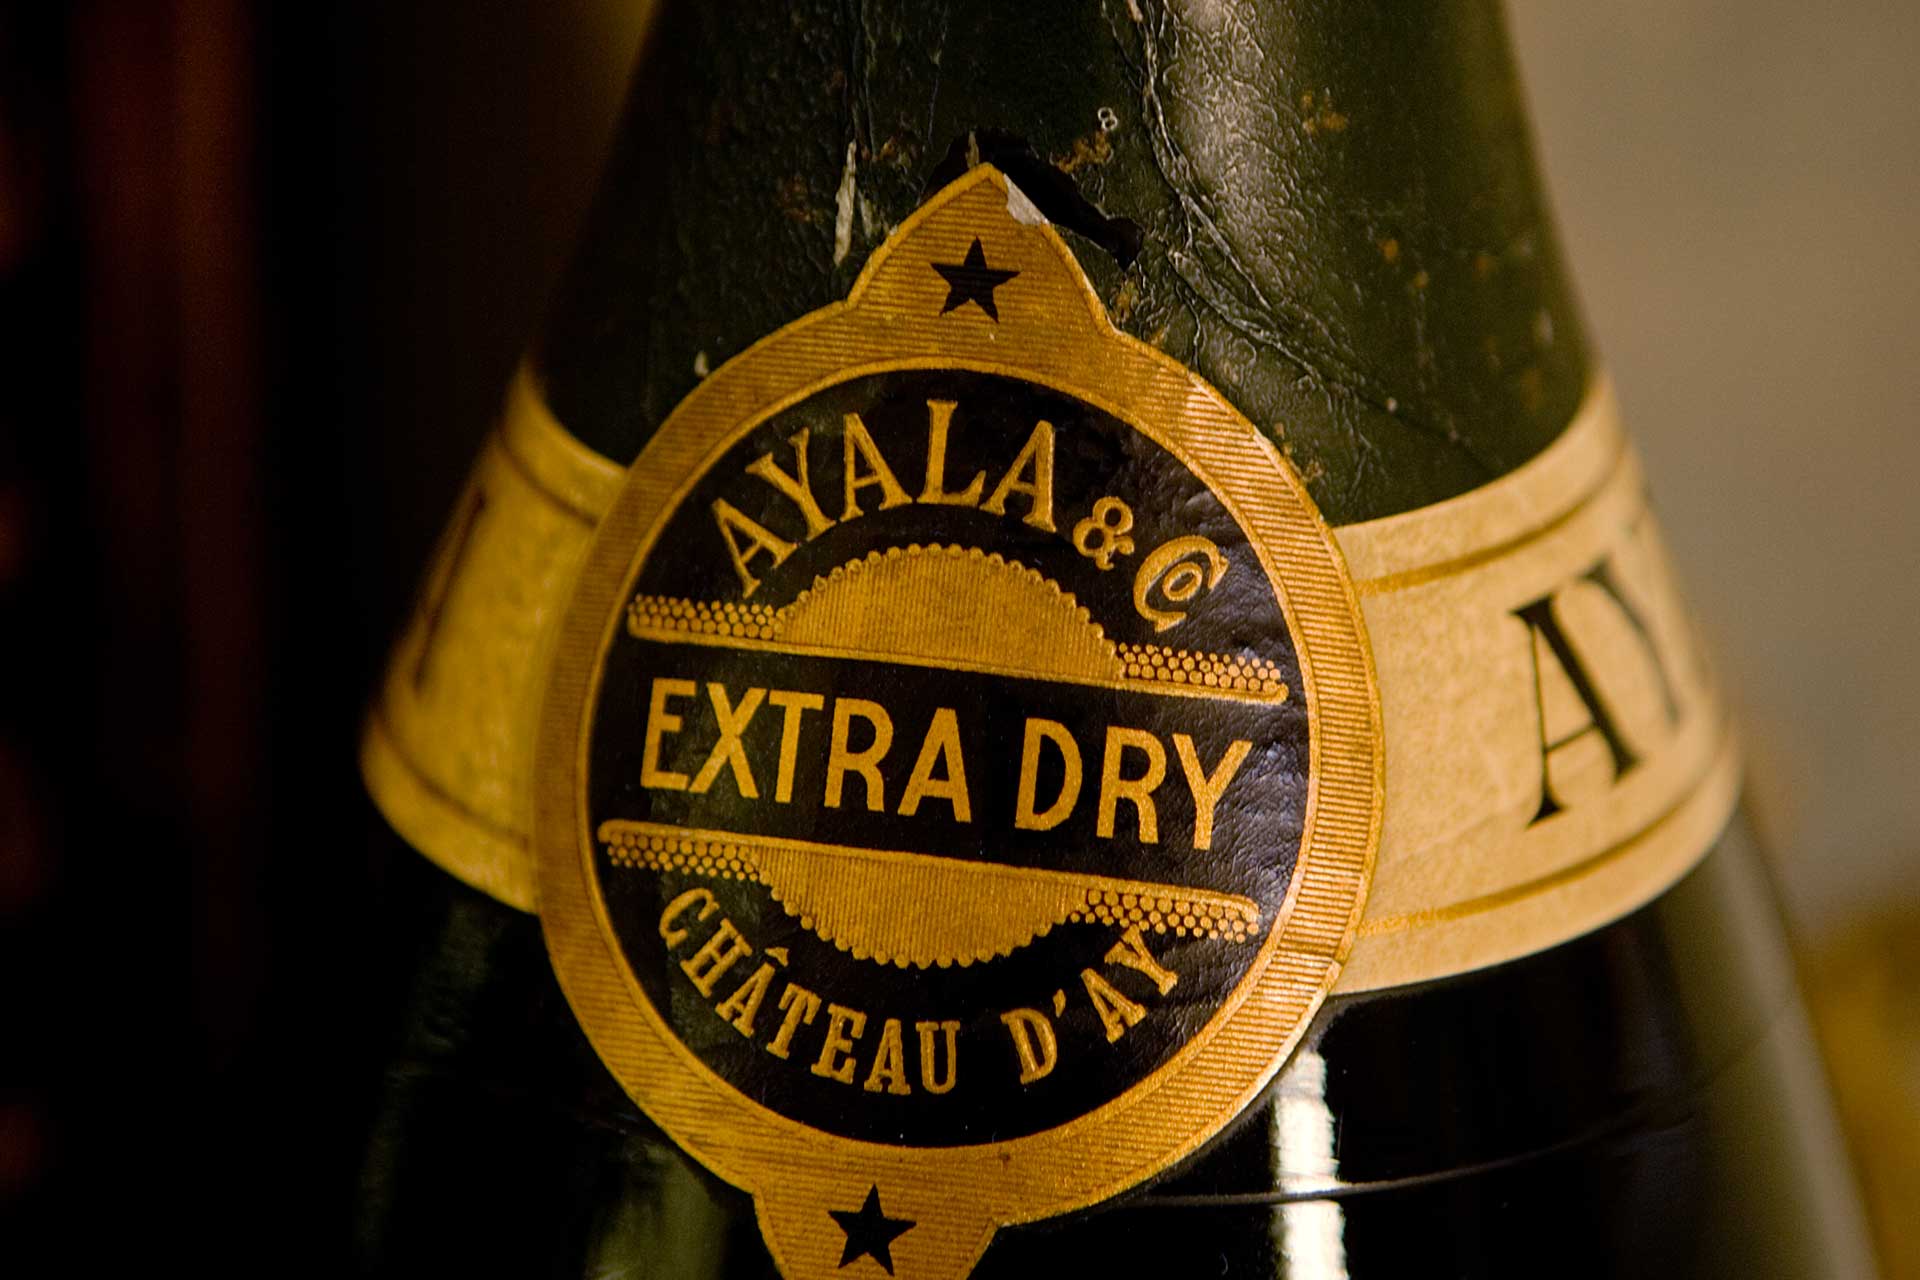 Ayala Storia dello Champagne